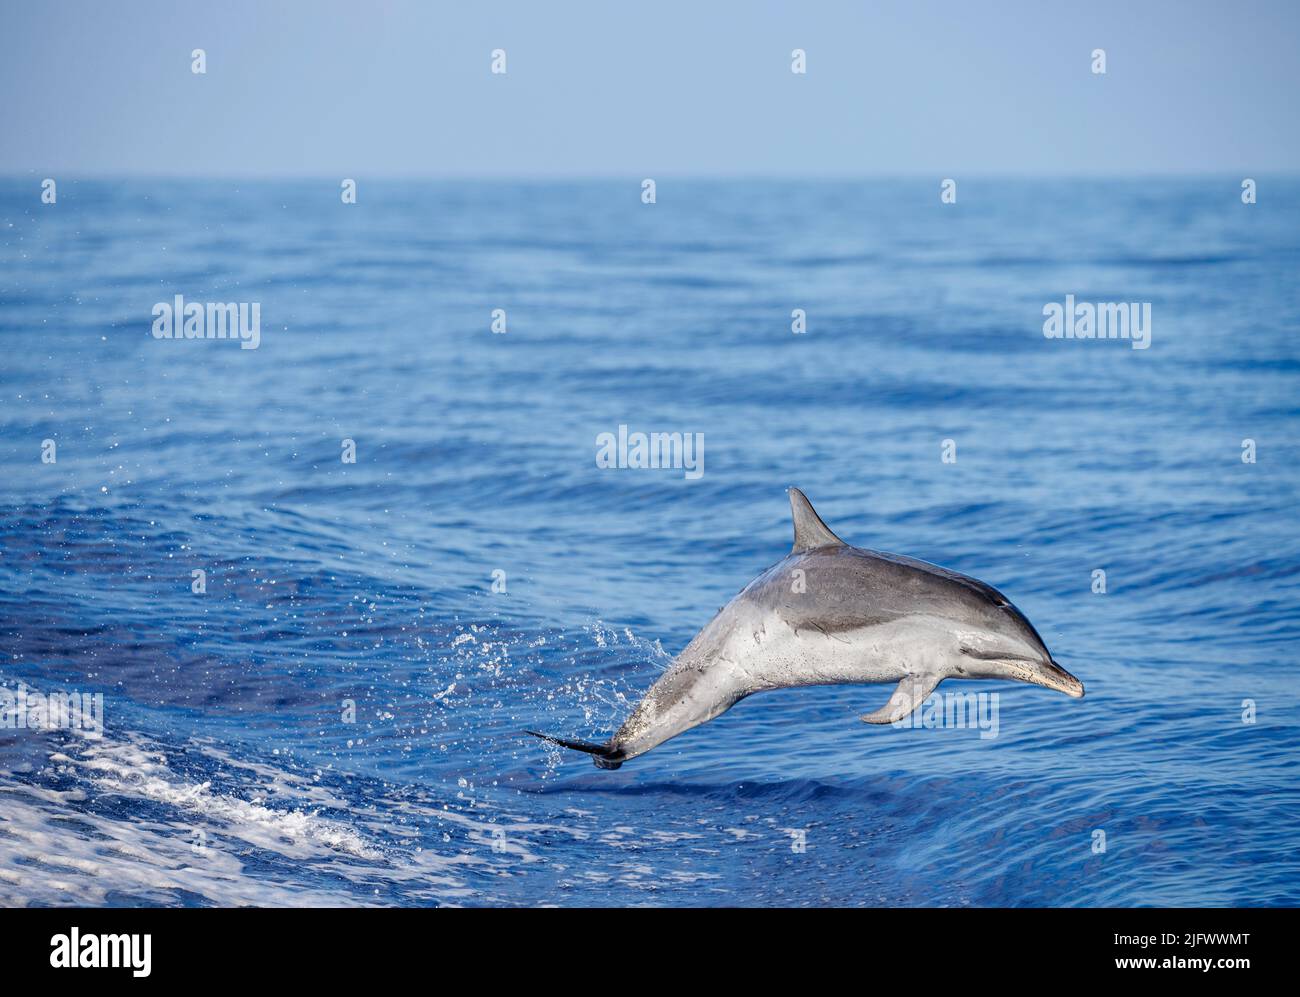 Delfines moteados pantropicales, Stenella attenuata, saltan fuera del mar abierto frente a la Isla Grande, Hawai, Océano Pacífico, Estados Unidos. Foto de stock